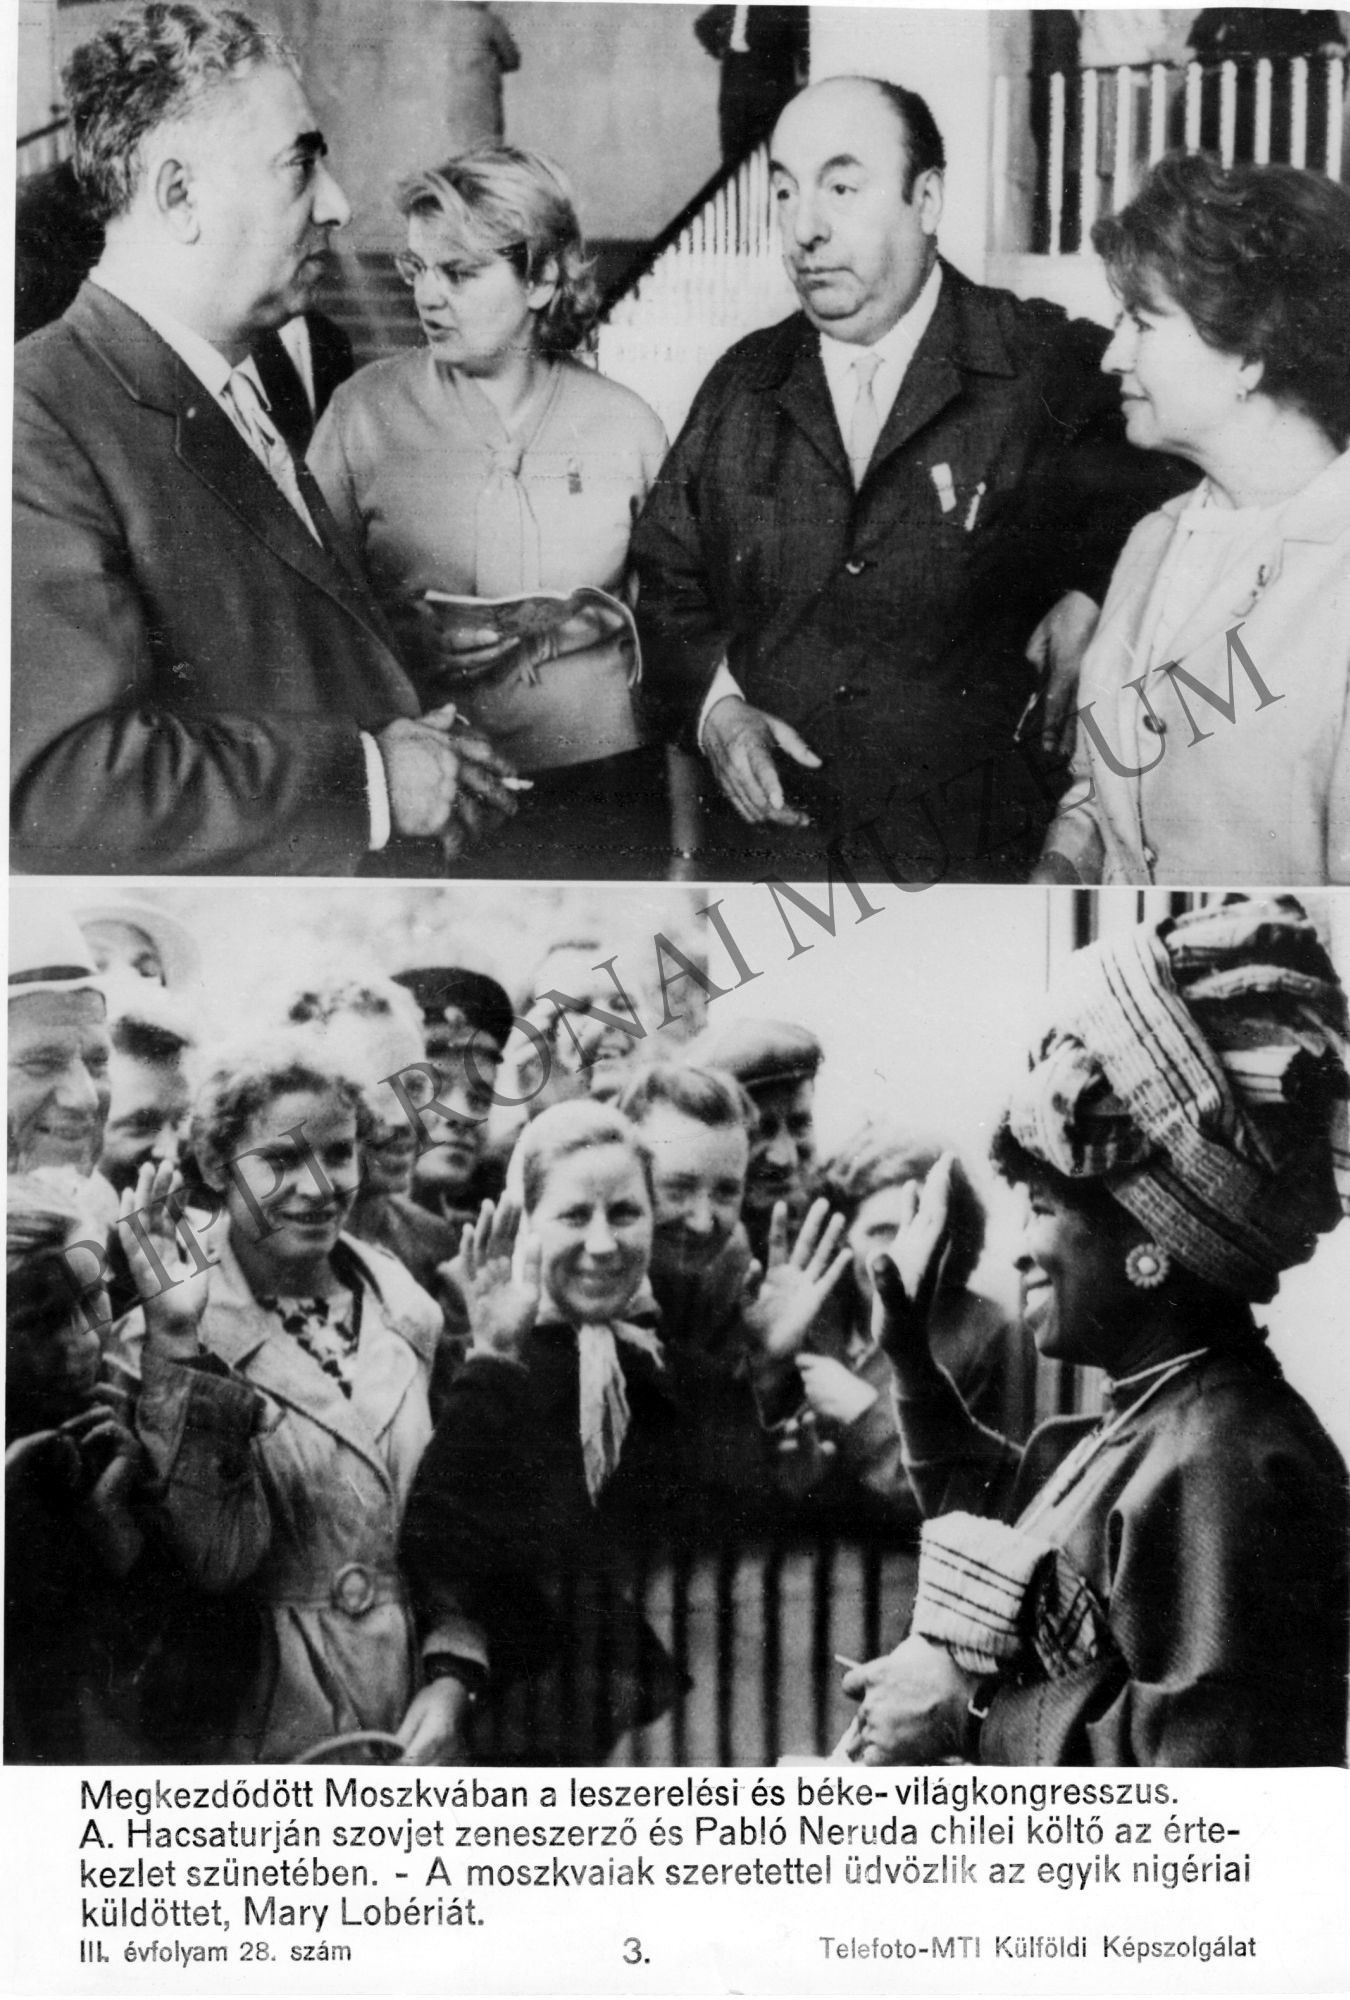 Kétosztatú propaganda kép.
1. Hacsaturján és Pablo Neruda a moszkvai béke-világkongresszuson
2. Nigéria küldötte, Mary Lobéria a kongresszuson (Rippl-Rónai Múzeum CC BY-NC-SA)